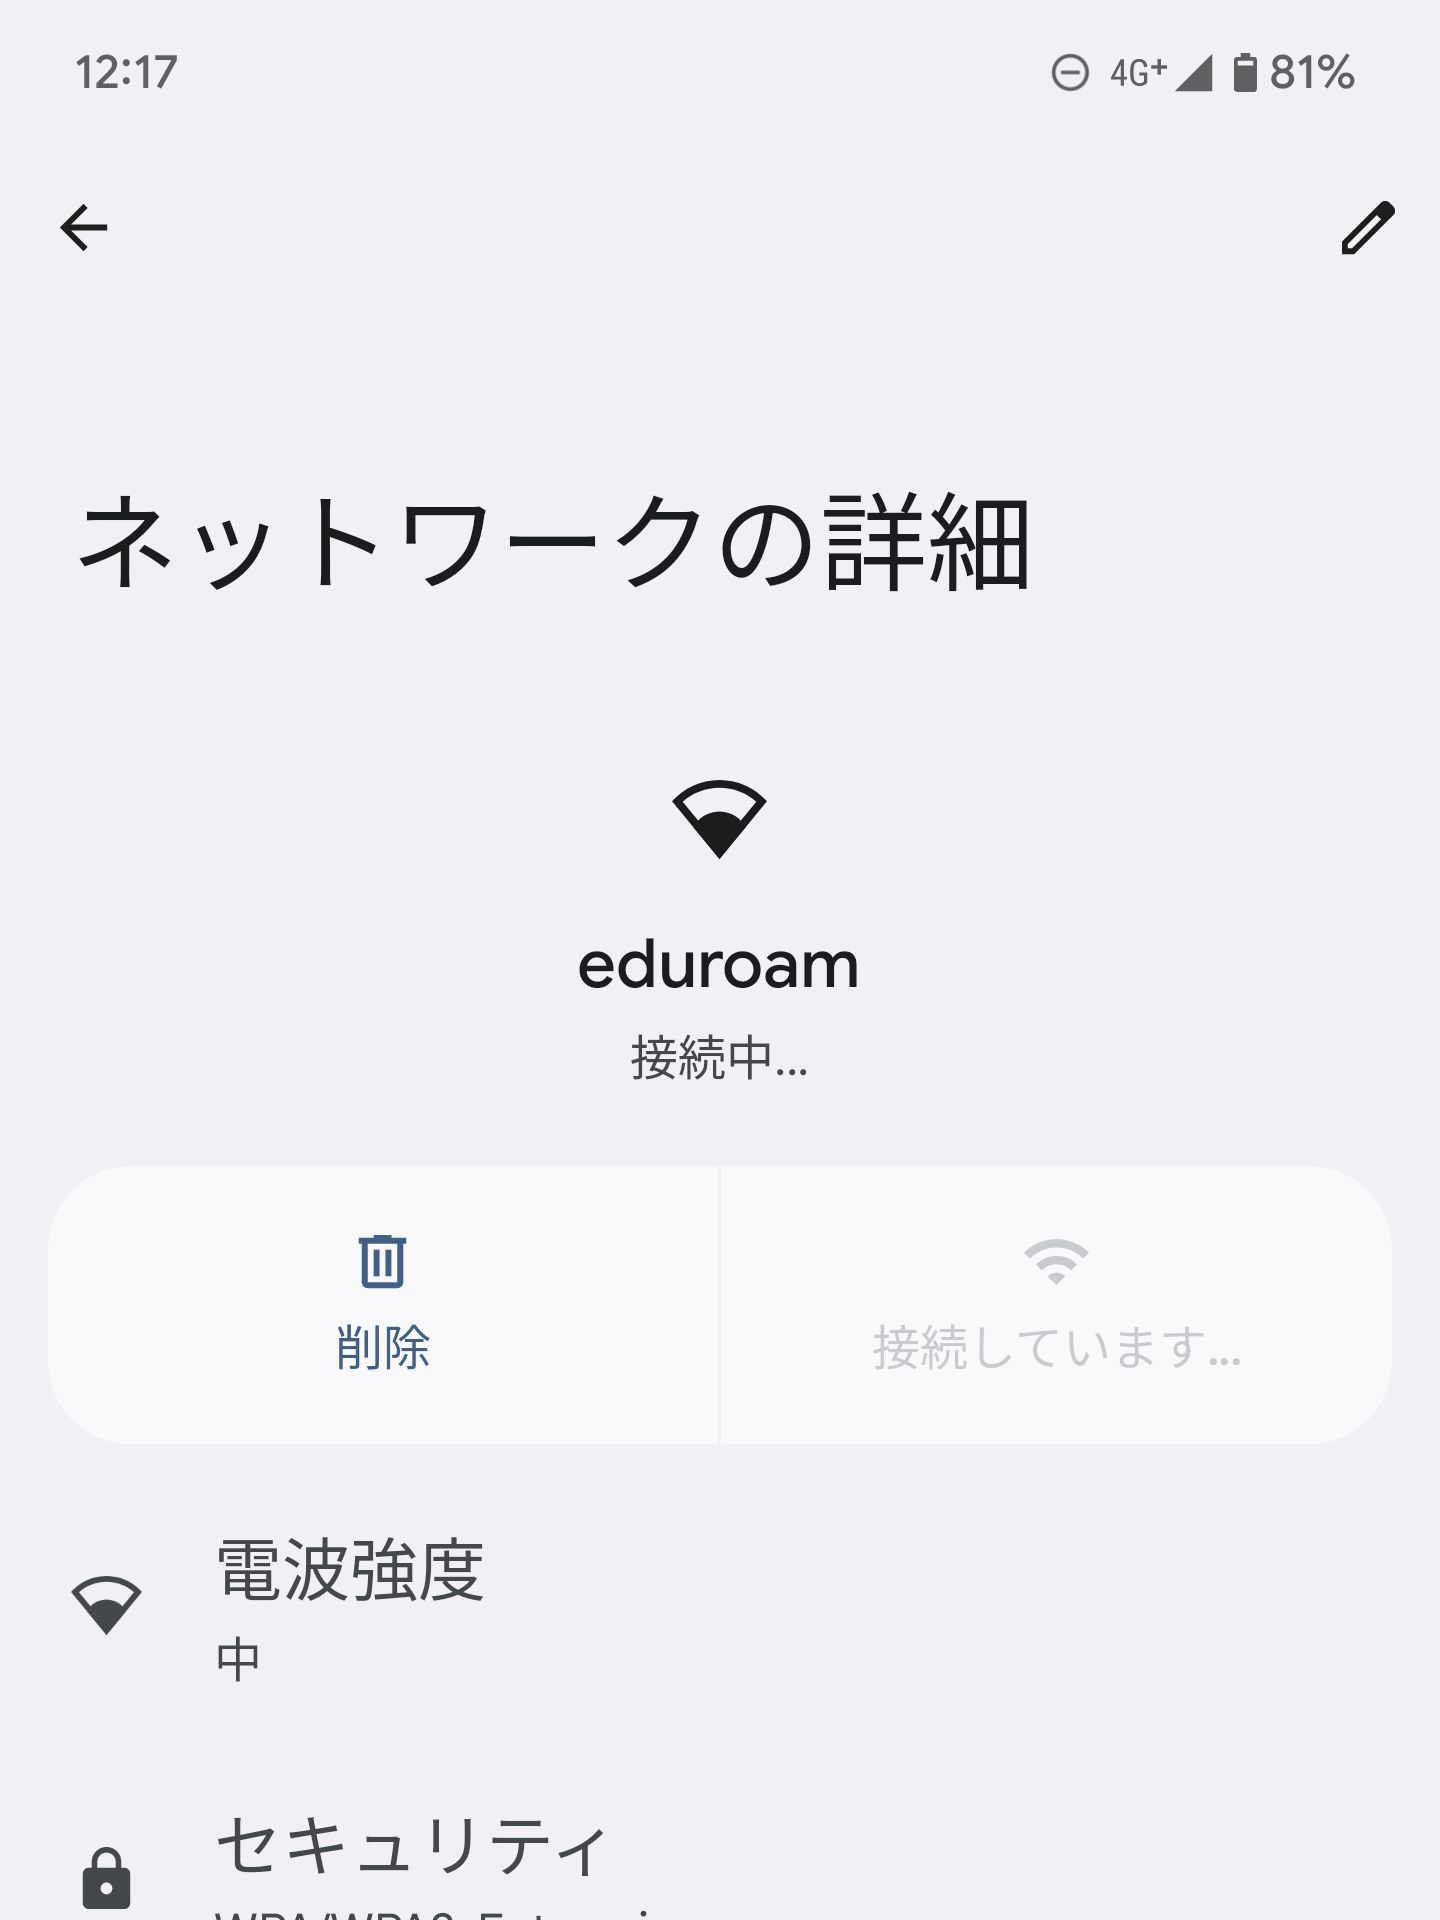 eduroamの接続